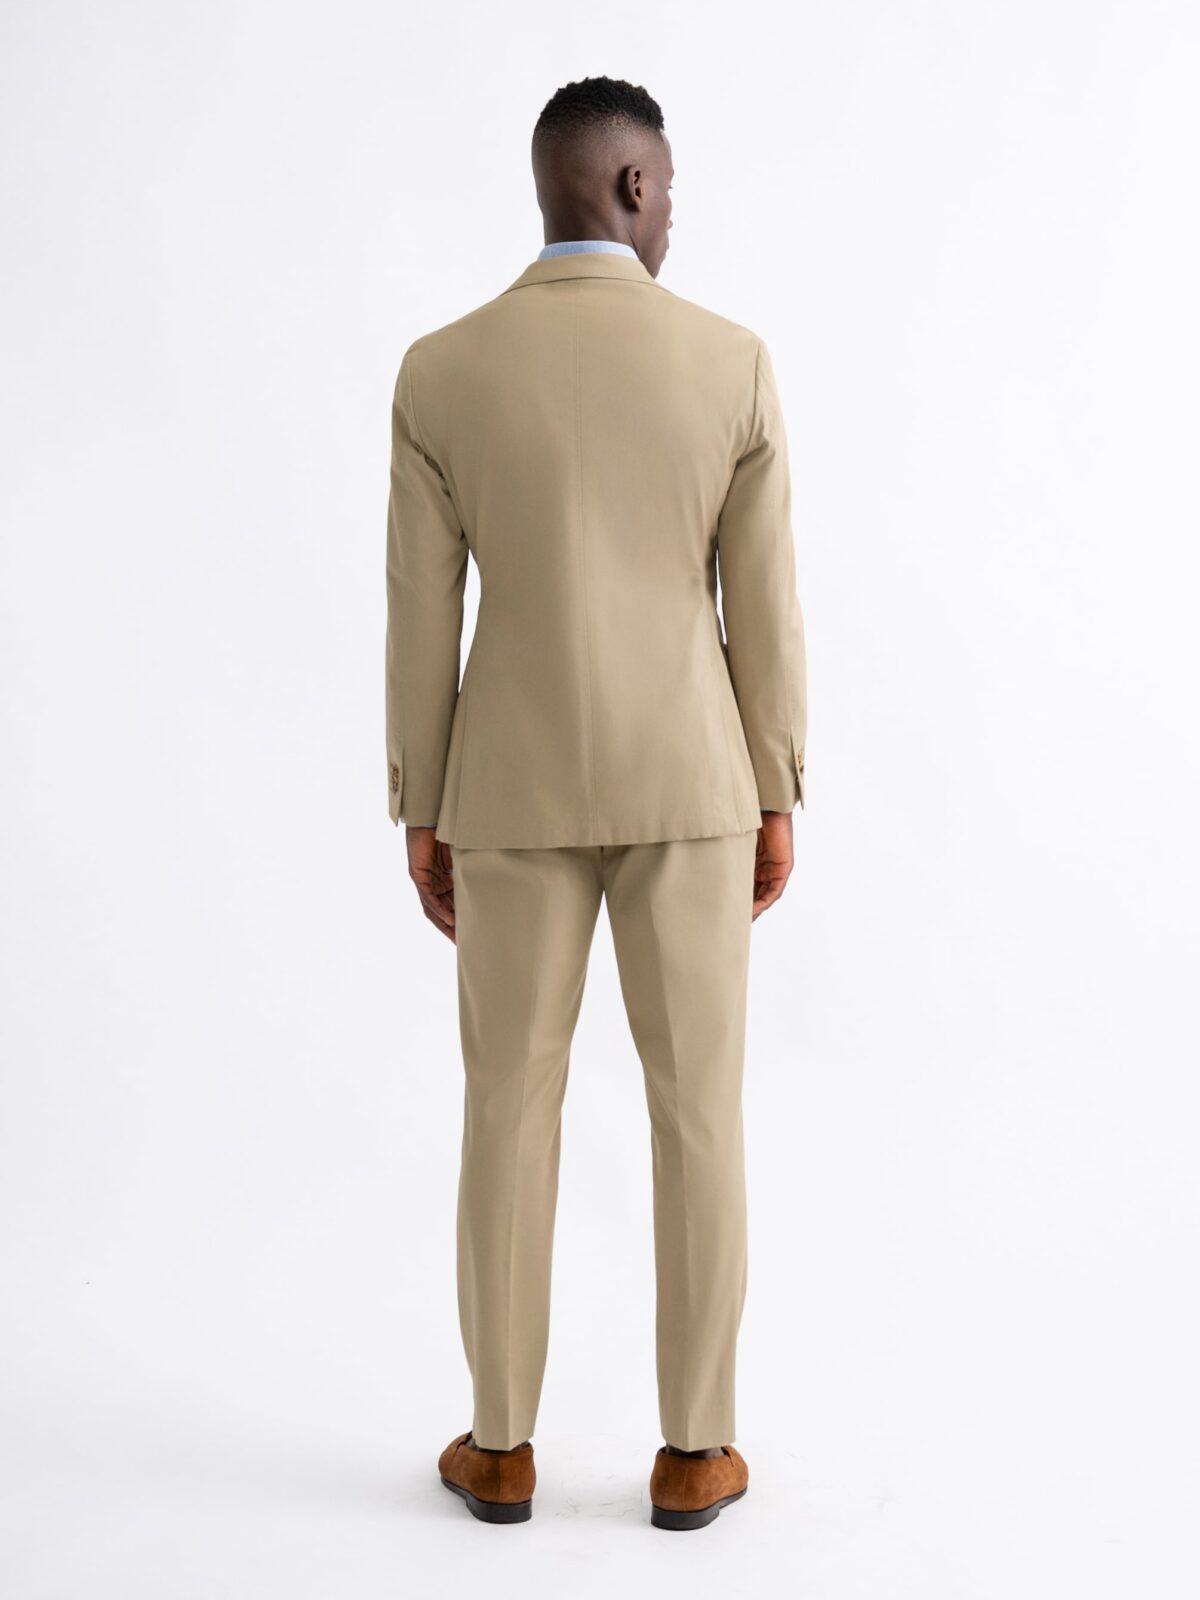 Beige Oversized Pantsuit for Women, Beige Formal Pants Suit for Business  Women, Formal Pantsuit for Women in Men's Style -  Sweden